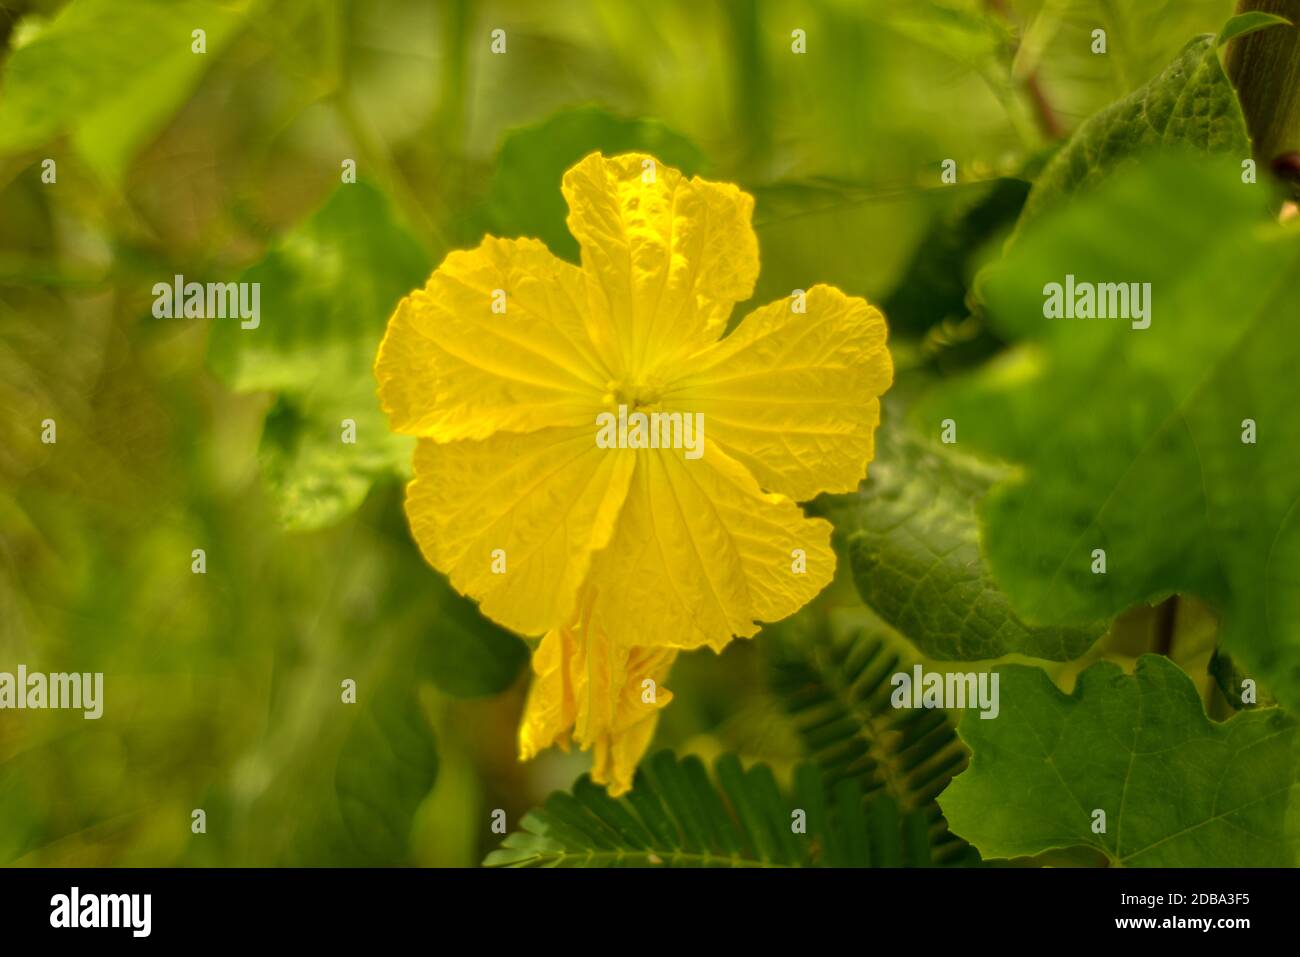 Yellow flower of Sponge gourd, Sponge Gourd Flower, Zucchini Flower. Stock Photo